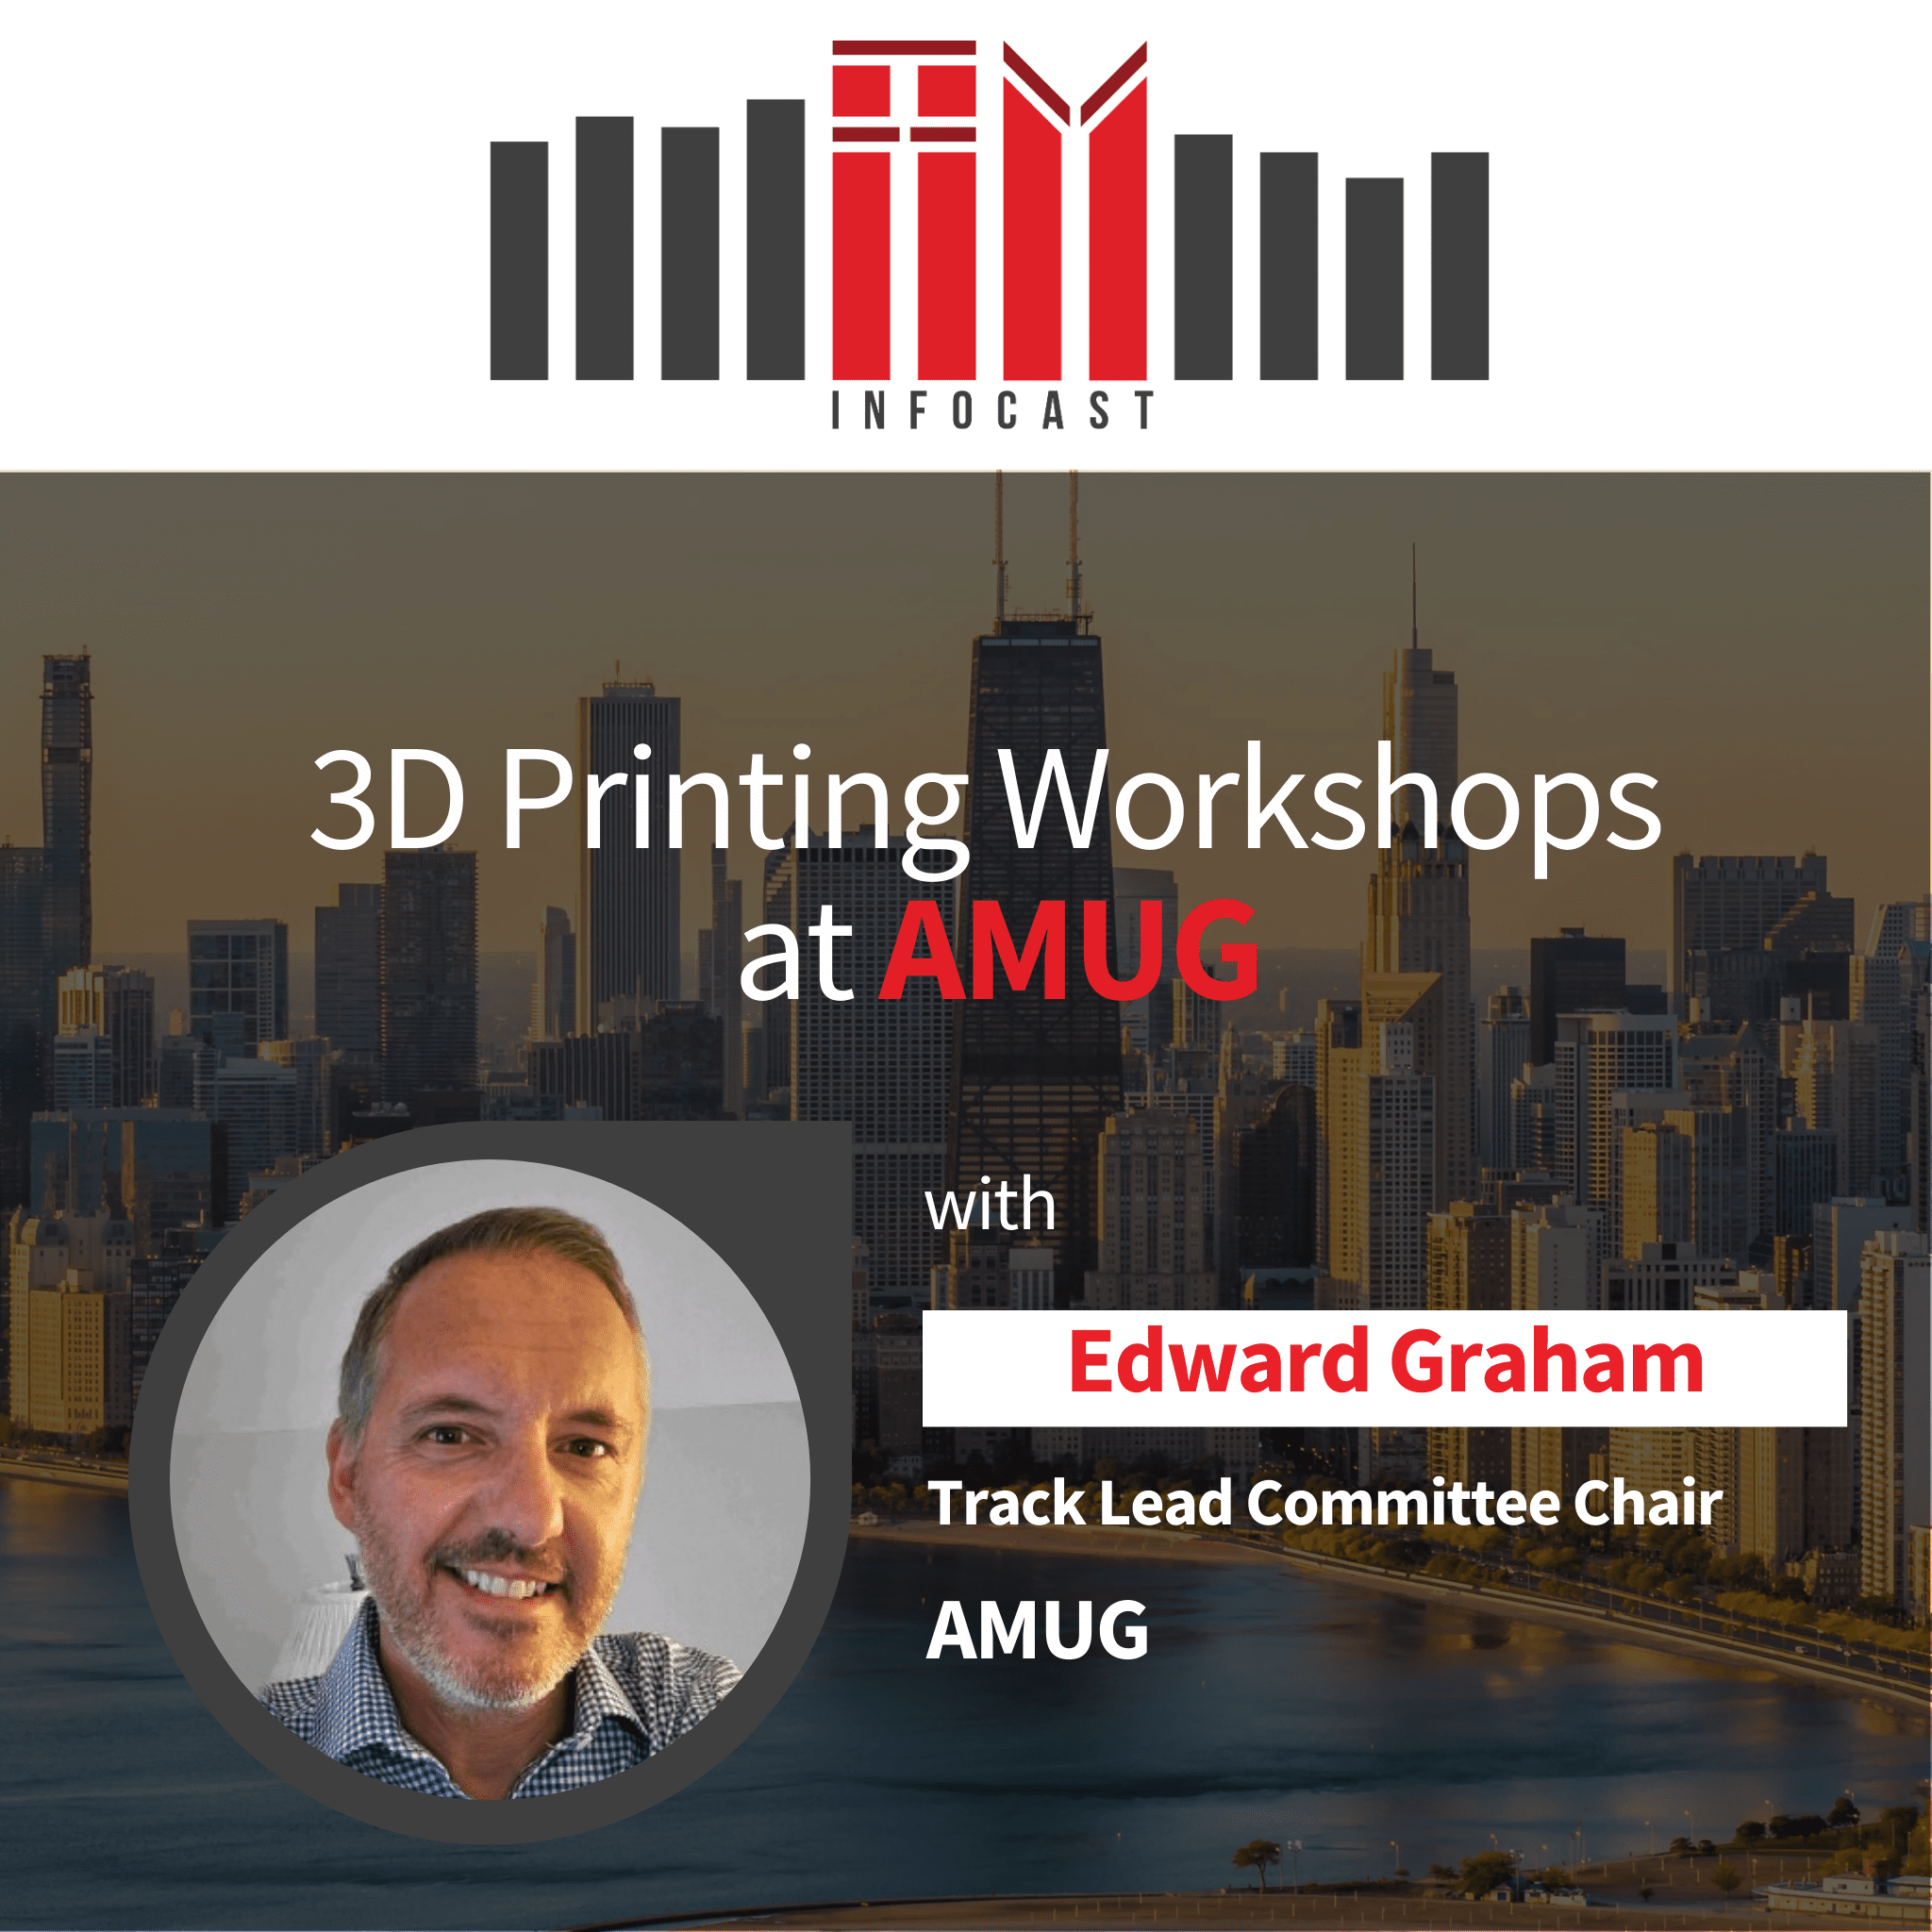 3D Printing Workshops at AMUG with Edward Graham